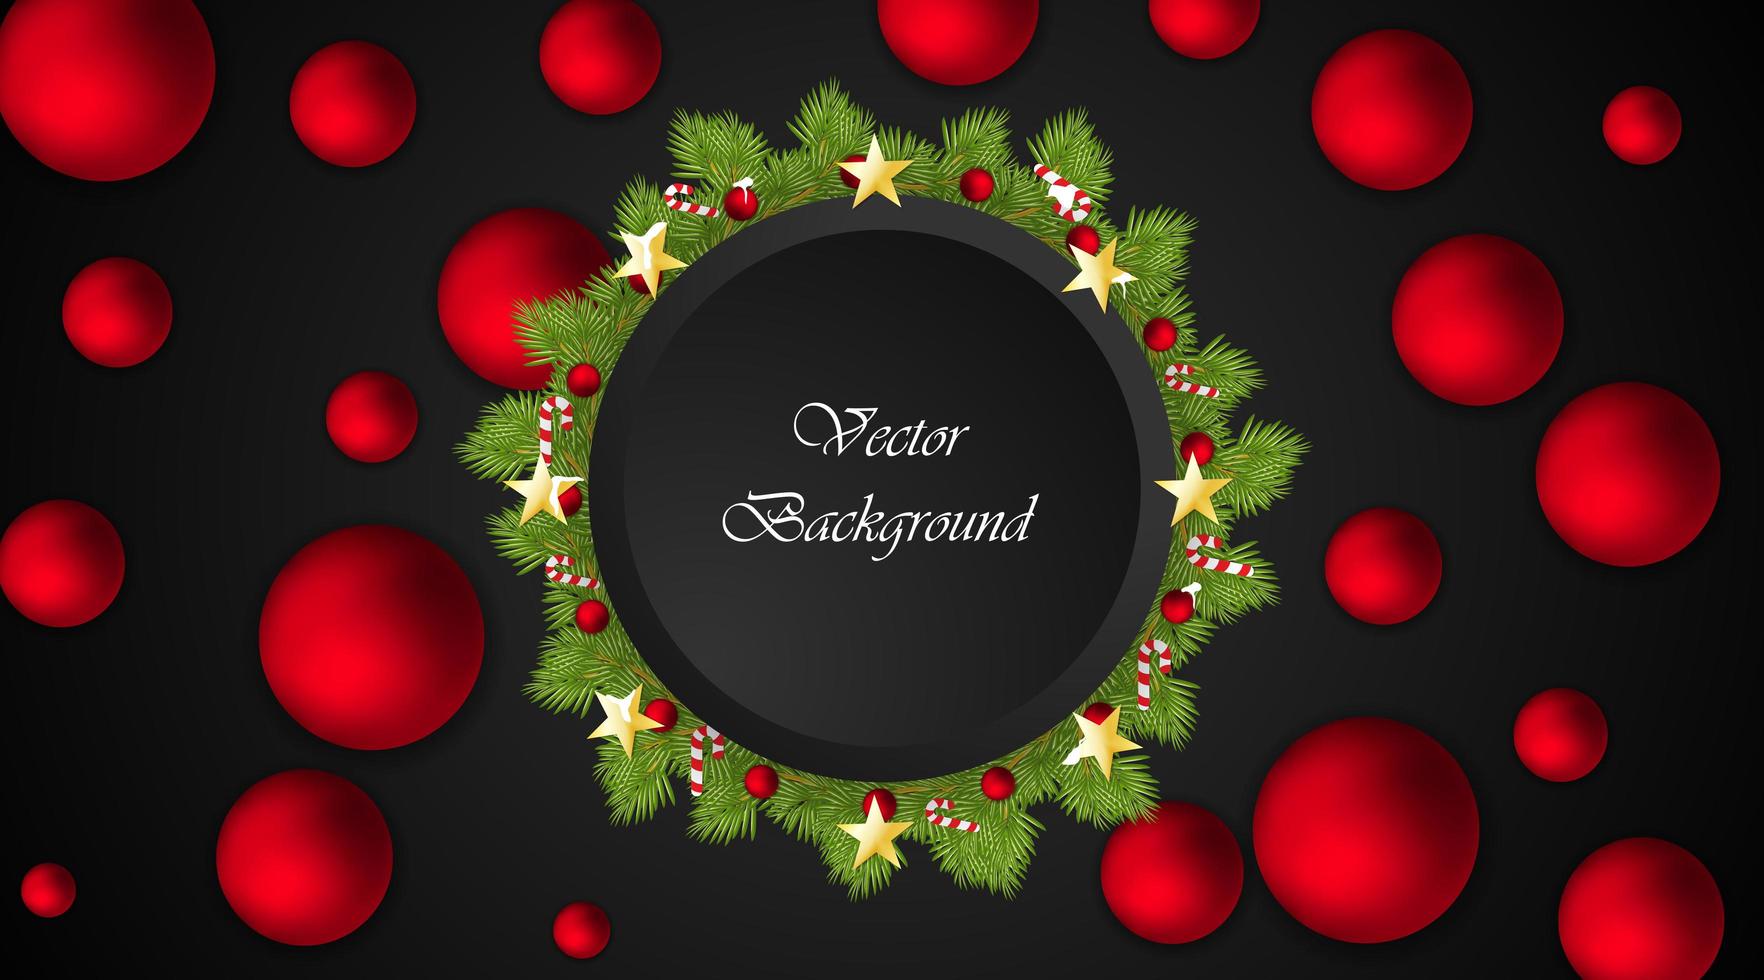 sfondo vettoriale di Natale. cerchio nero per il testo. corona con palline rosse, caramelle, stelle.